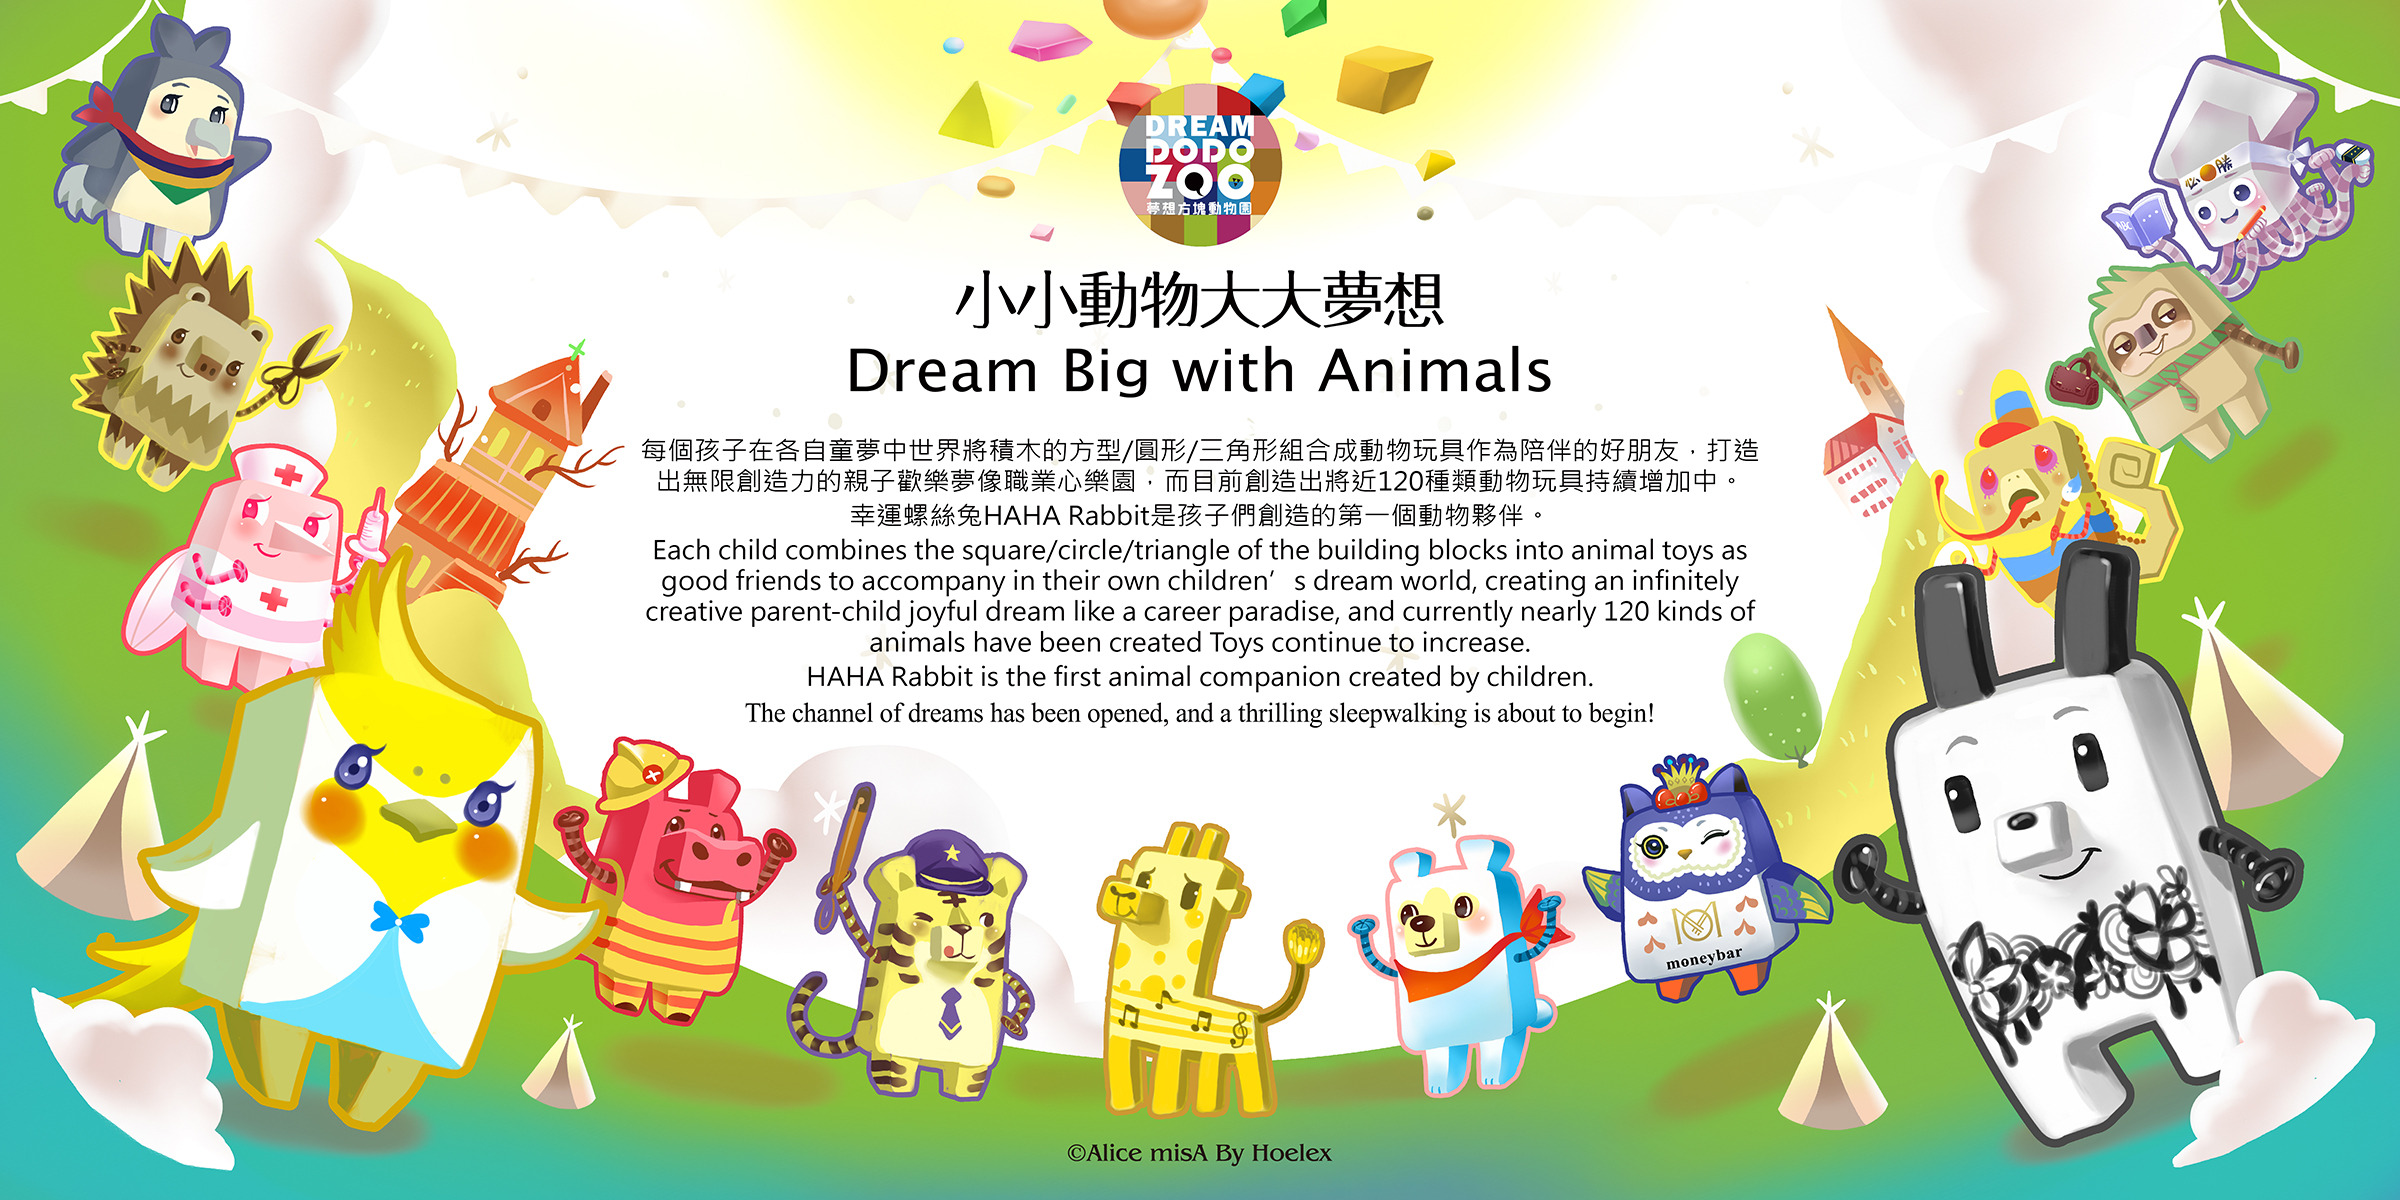 Dream DODO ZOO夢想方塊動物園-作者牆(2400x1200圖片一張)圖片一張).jpg